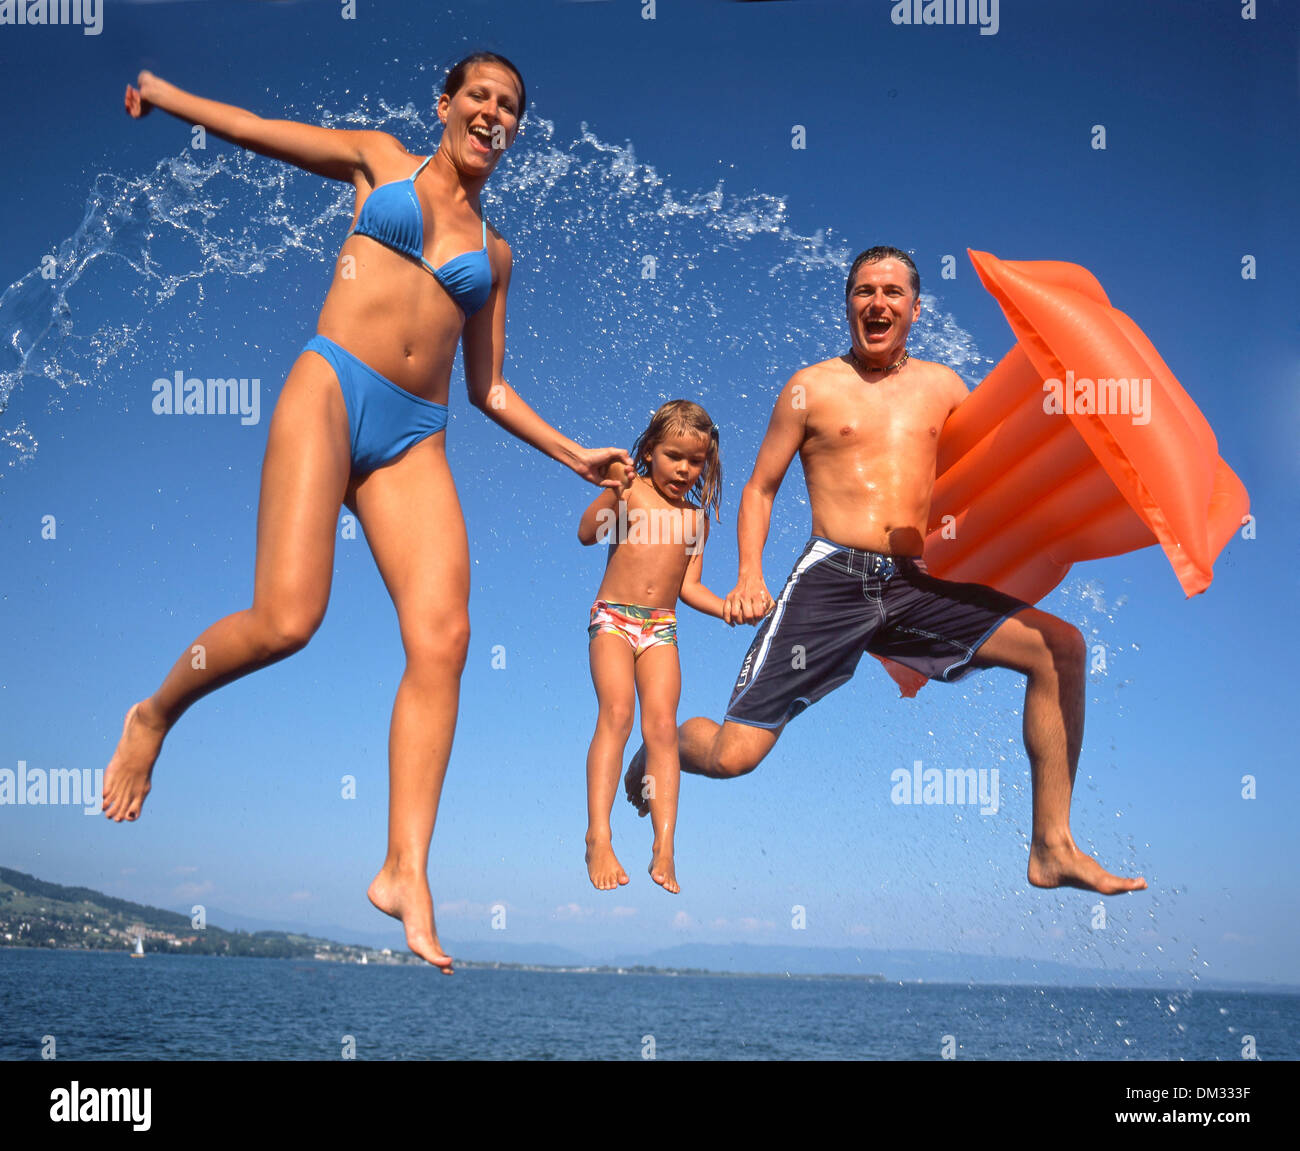 La Svizzera, Europa, sport, tempo libero, avventura, bagno, balneazione, spiaggia bagno, famiglia, acqua, sport, lago, jump, splash Foto Stock